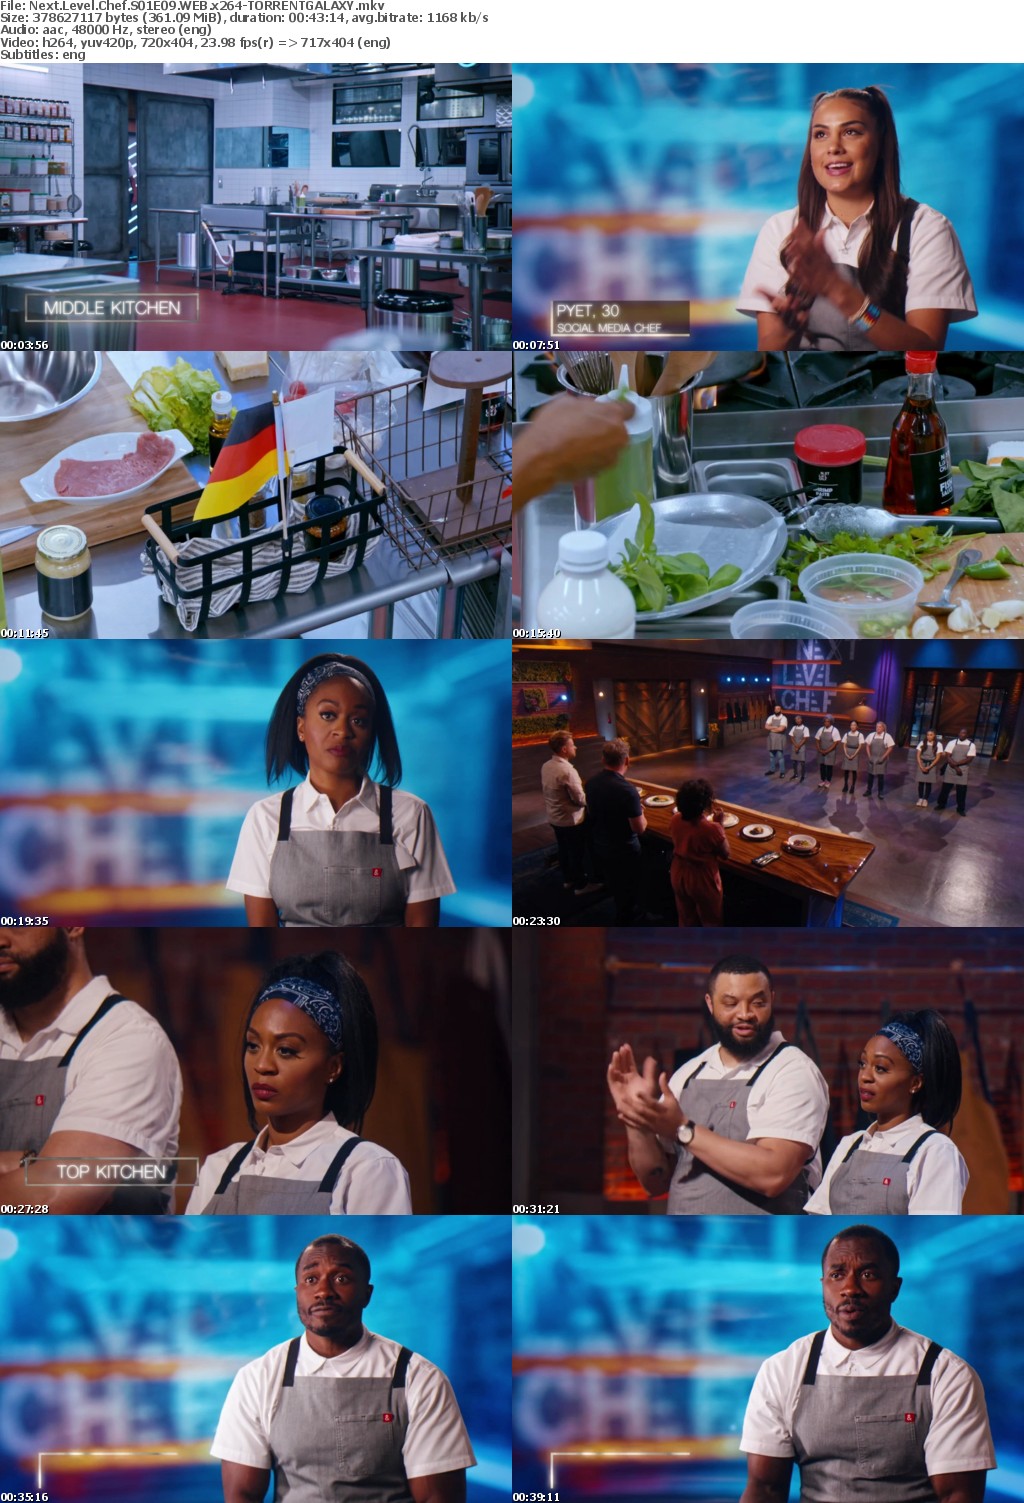 Next Level Chef S01E09 WEB x264-GALAXY